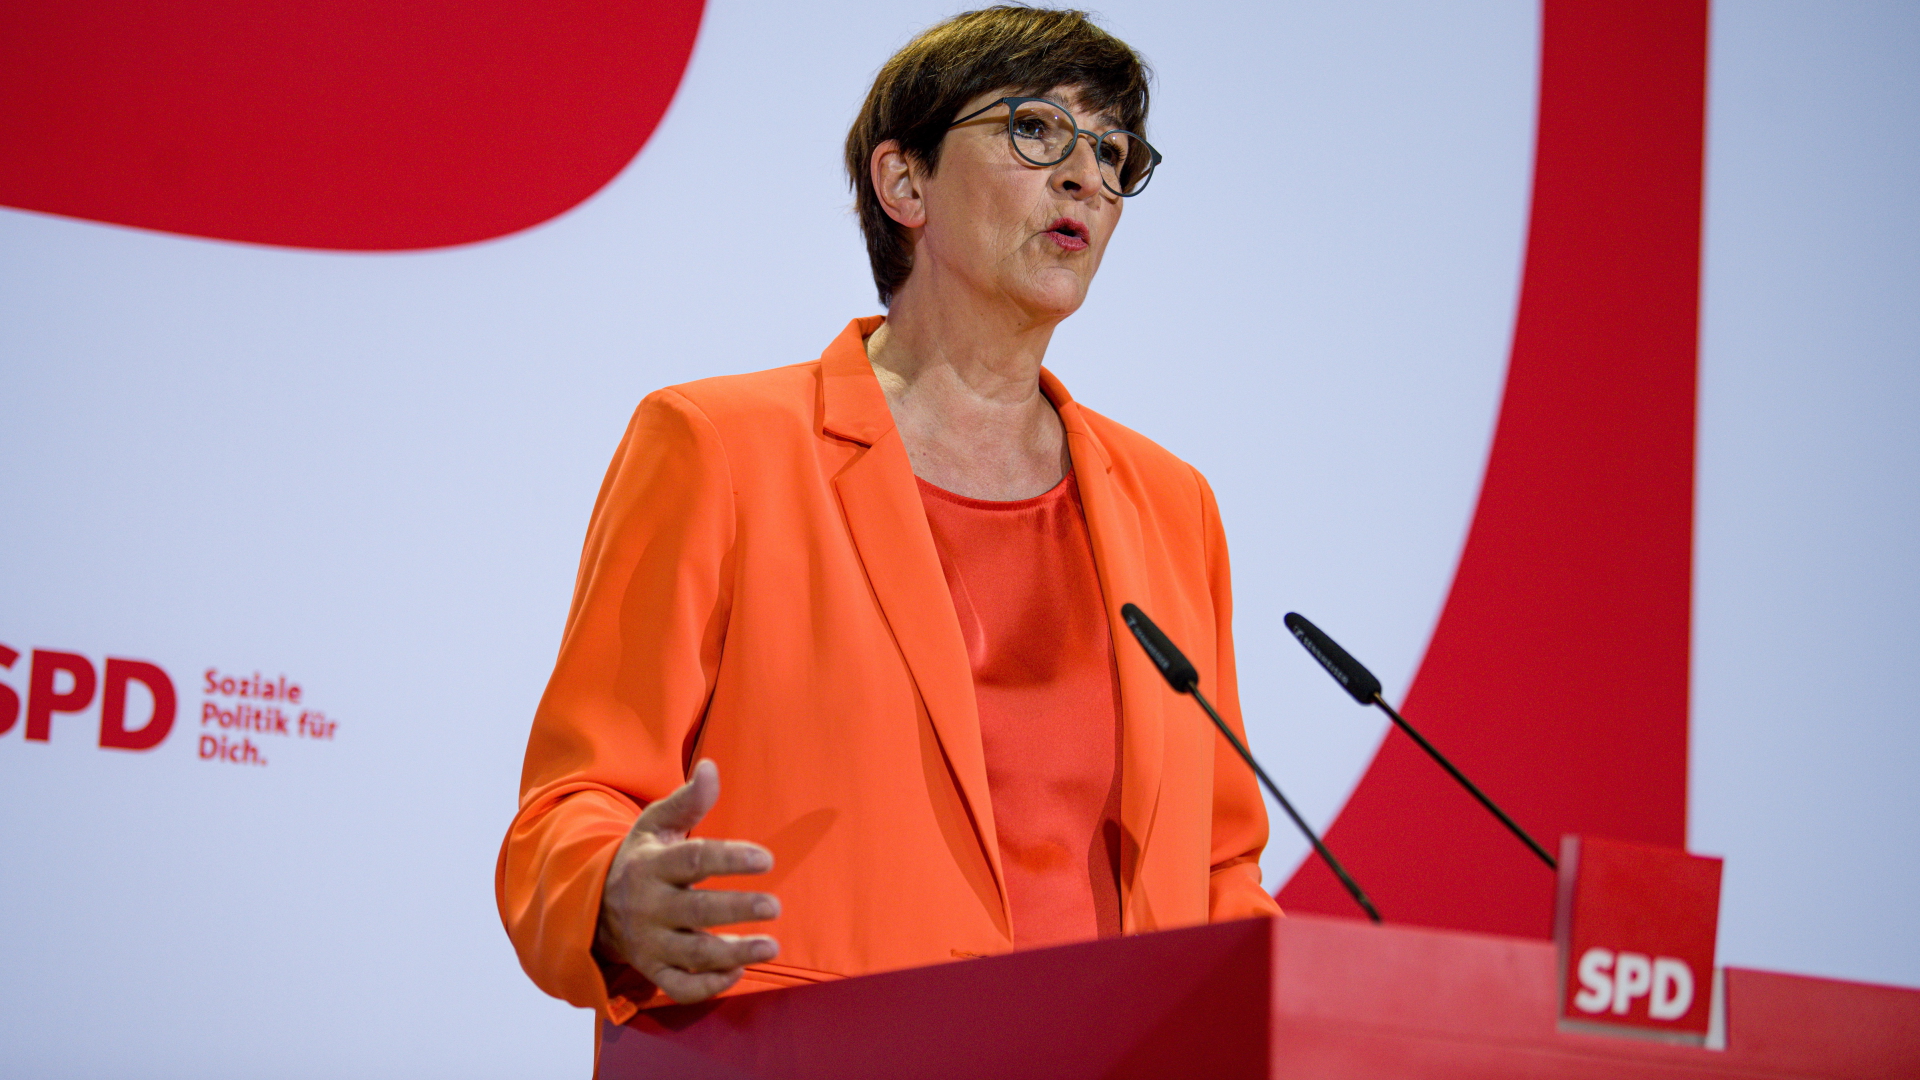 Die SPD-Vorsitzende Saskia Esken spricht bei einer Pressekonferenz in Berlin.